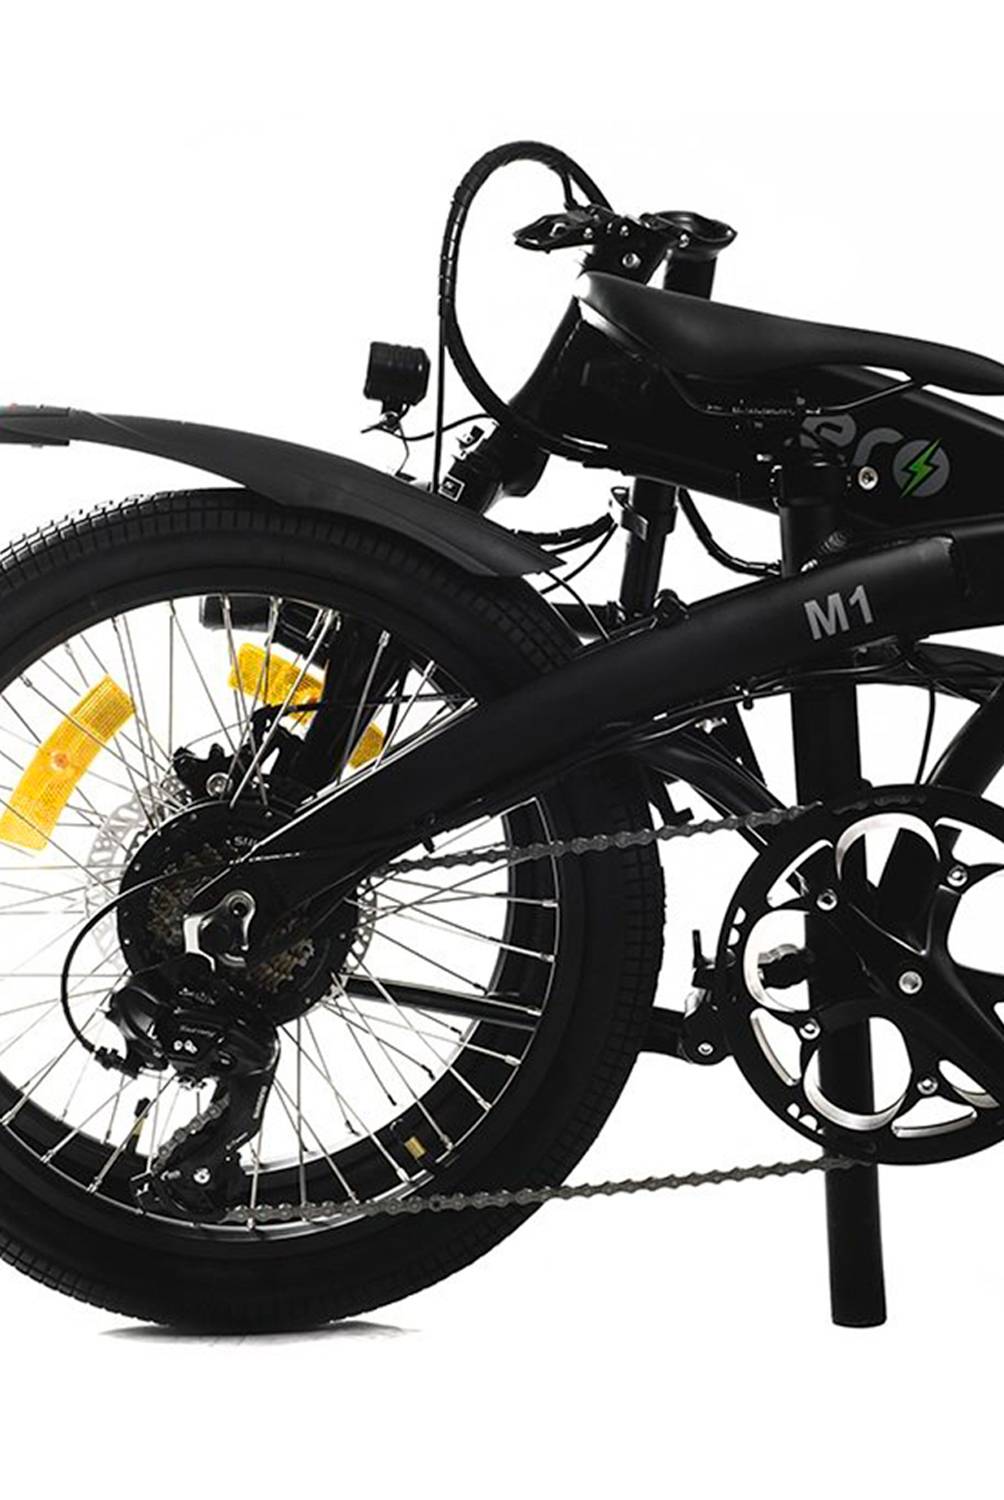 CERO MOTORS - Bicicleta Electrica Ceromotors M1